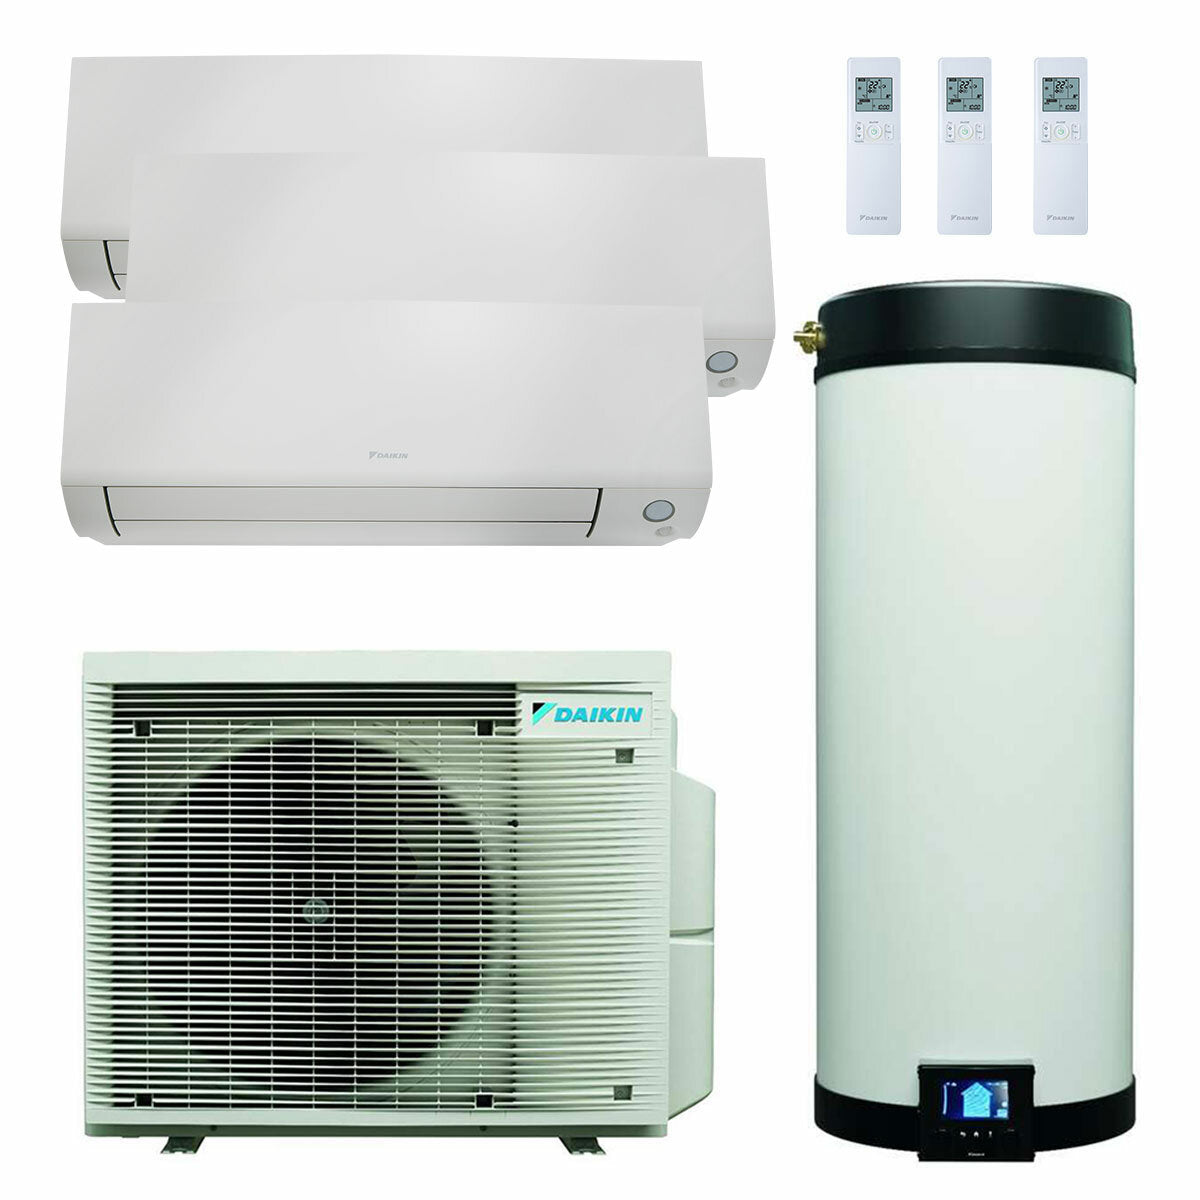 Système de climatisation et d'eau chaude sanitaire trial split Daikin Multi+ - Unités intérieures Perfera All Seasons 9000+9000+12000 BTU - Réservoir 90 l